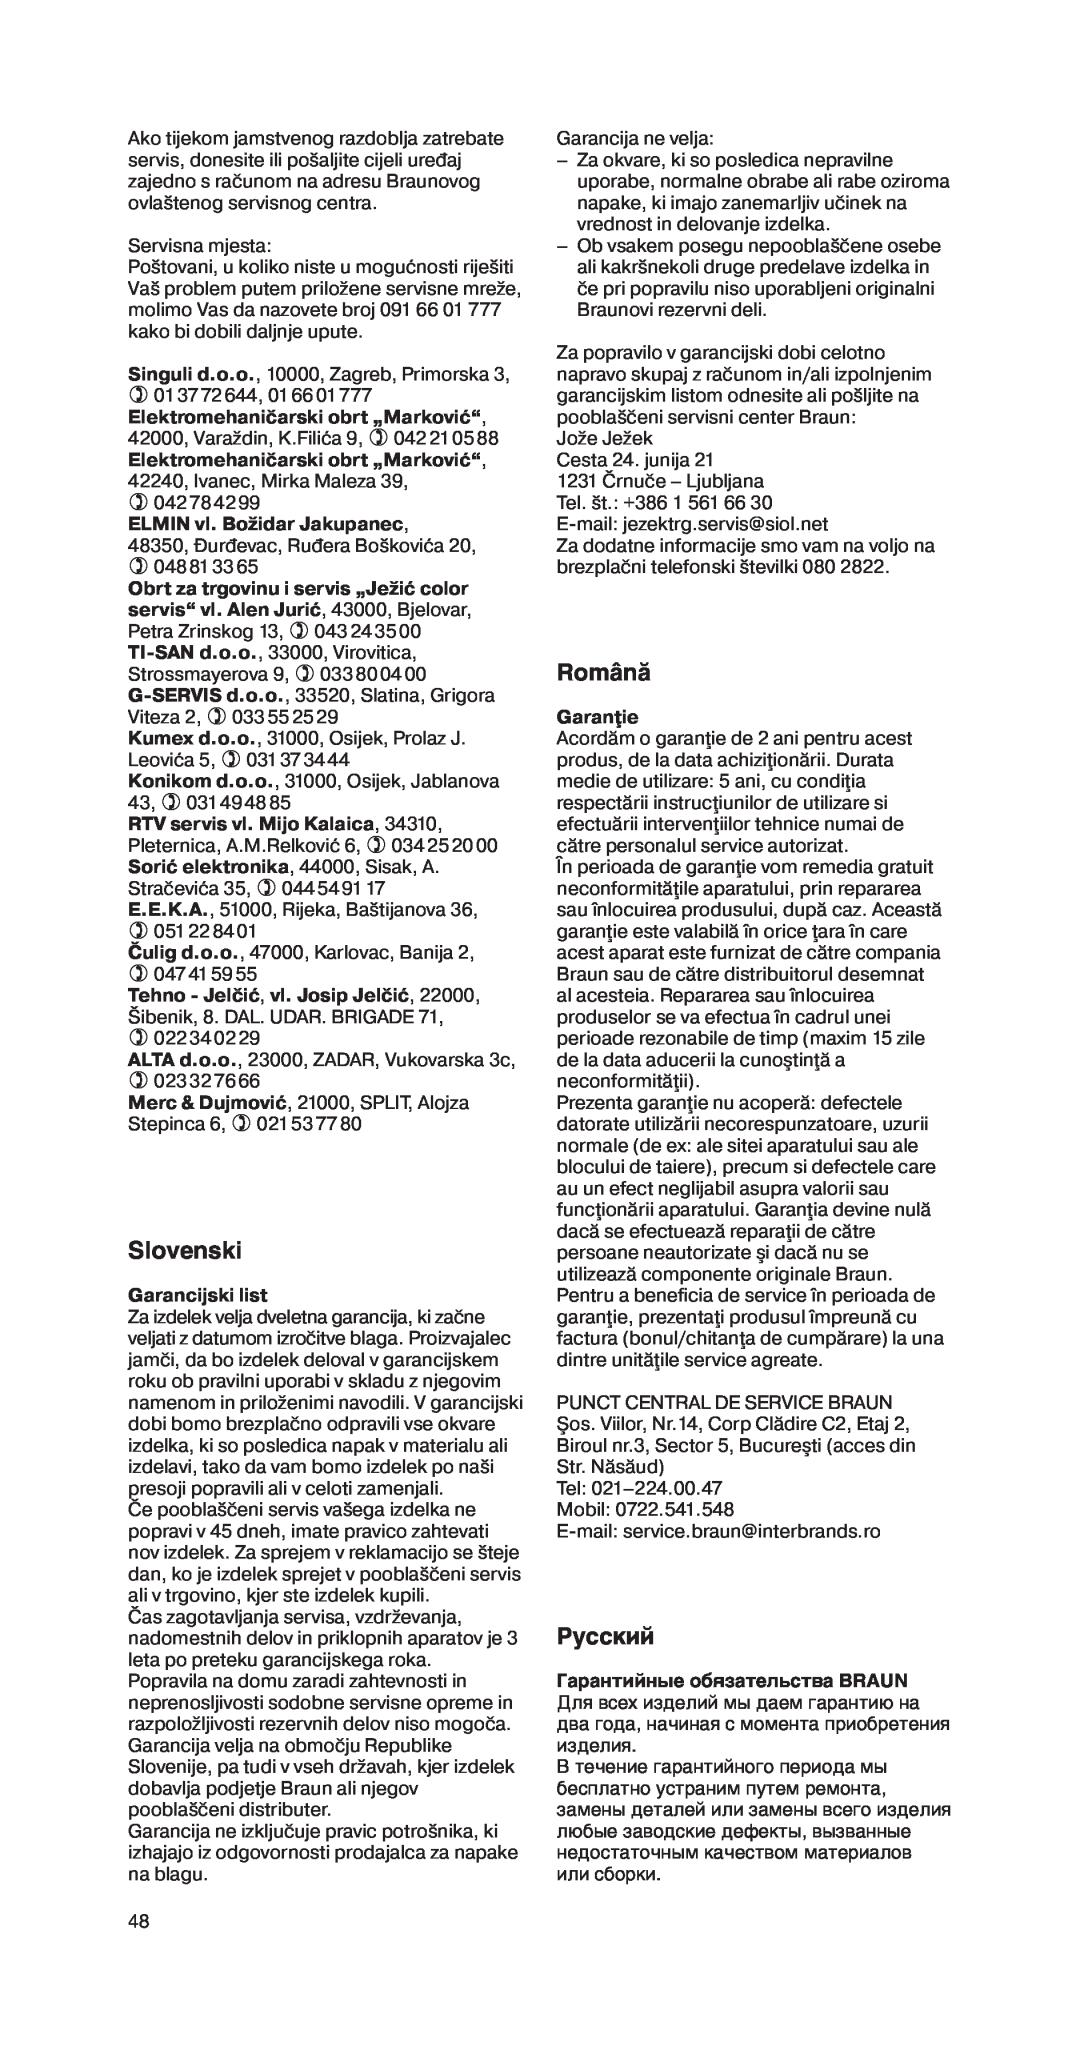 Braun MR 550 Buffet manual Slovenski, Românå, êÛÒÒÍËÈ, Garancijski list, Garanţie 